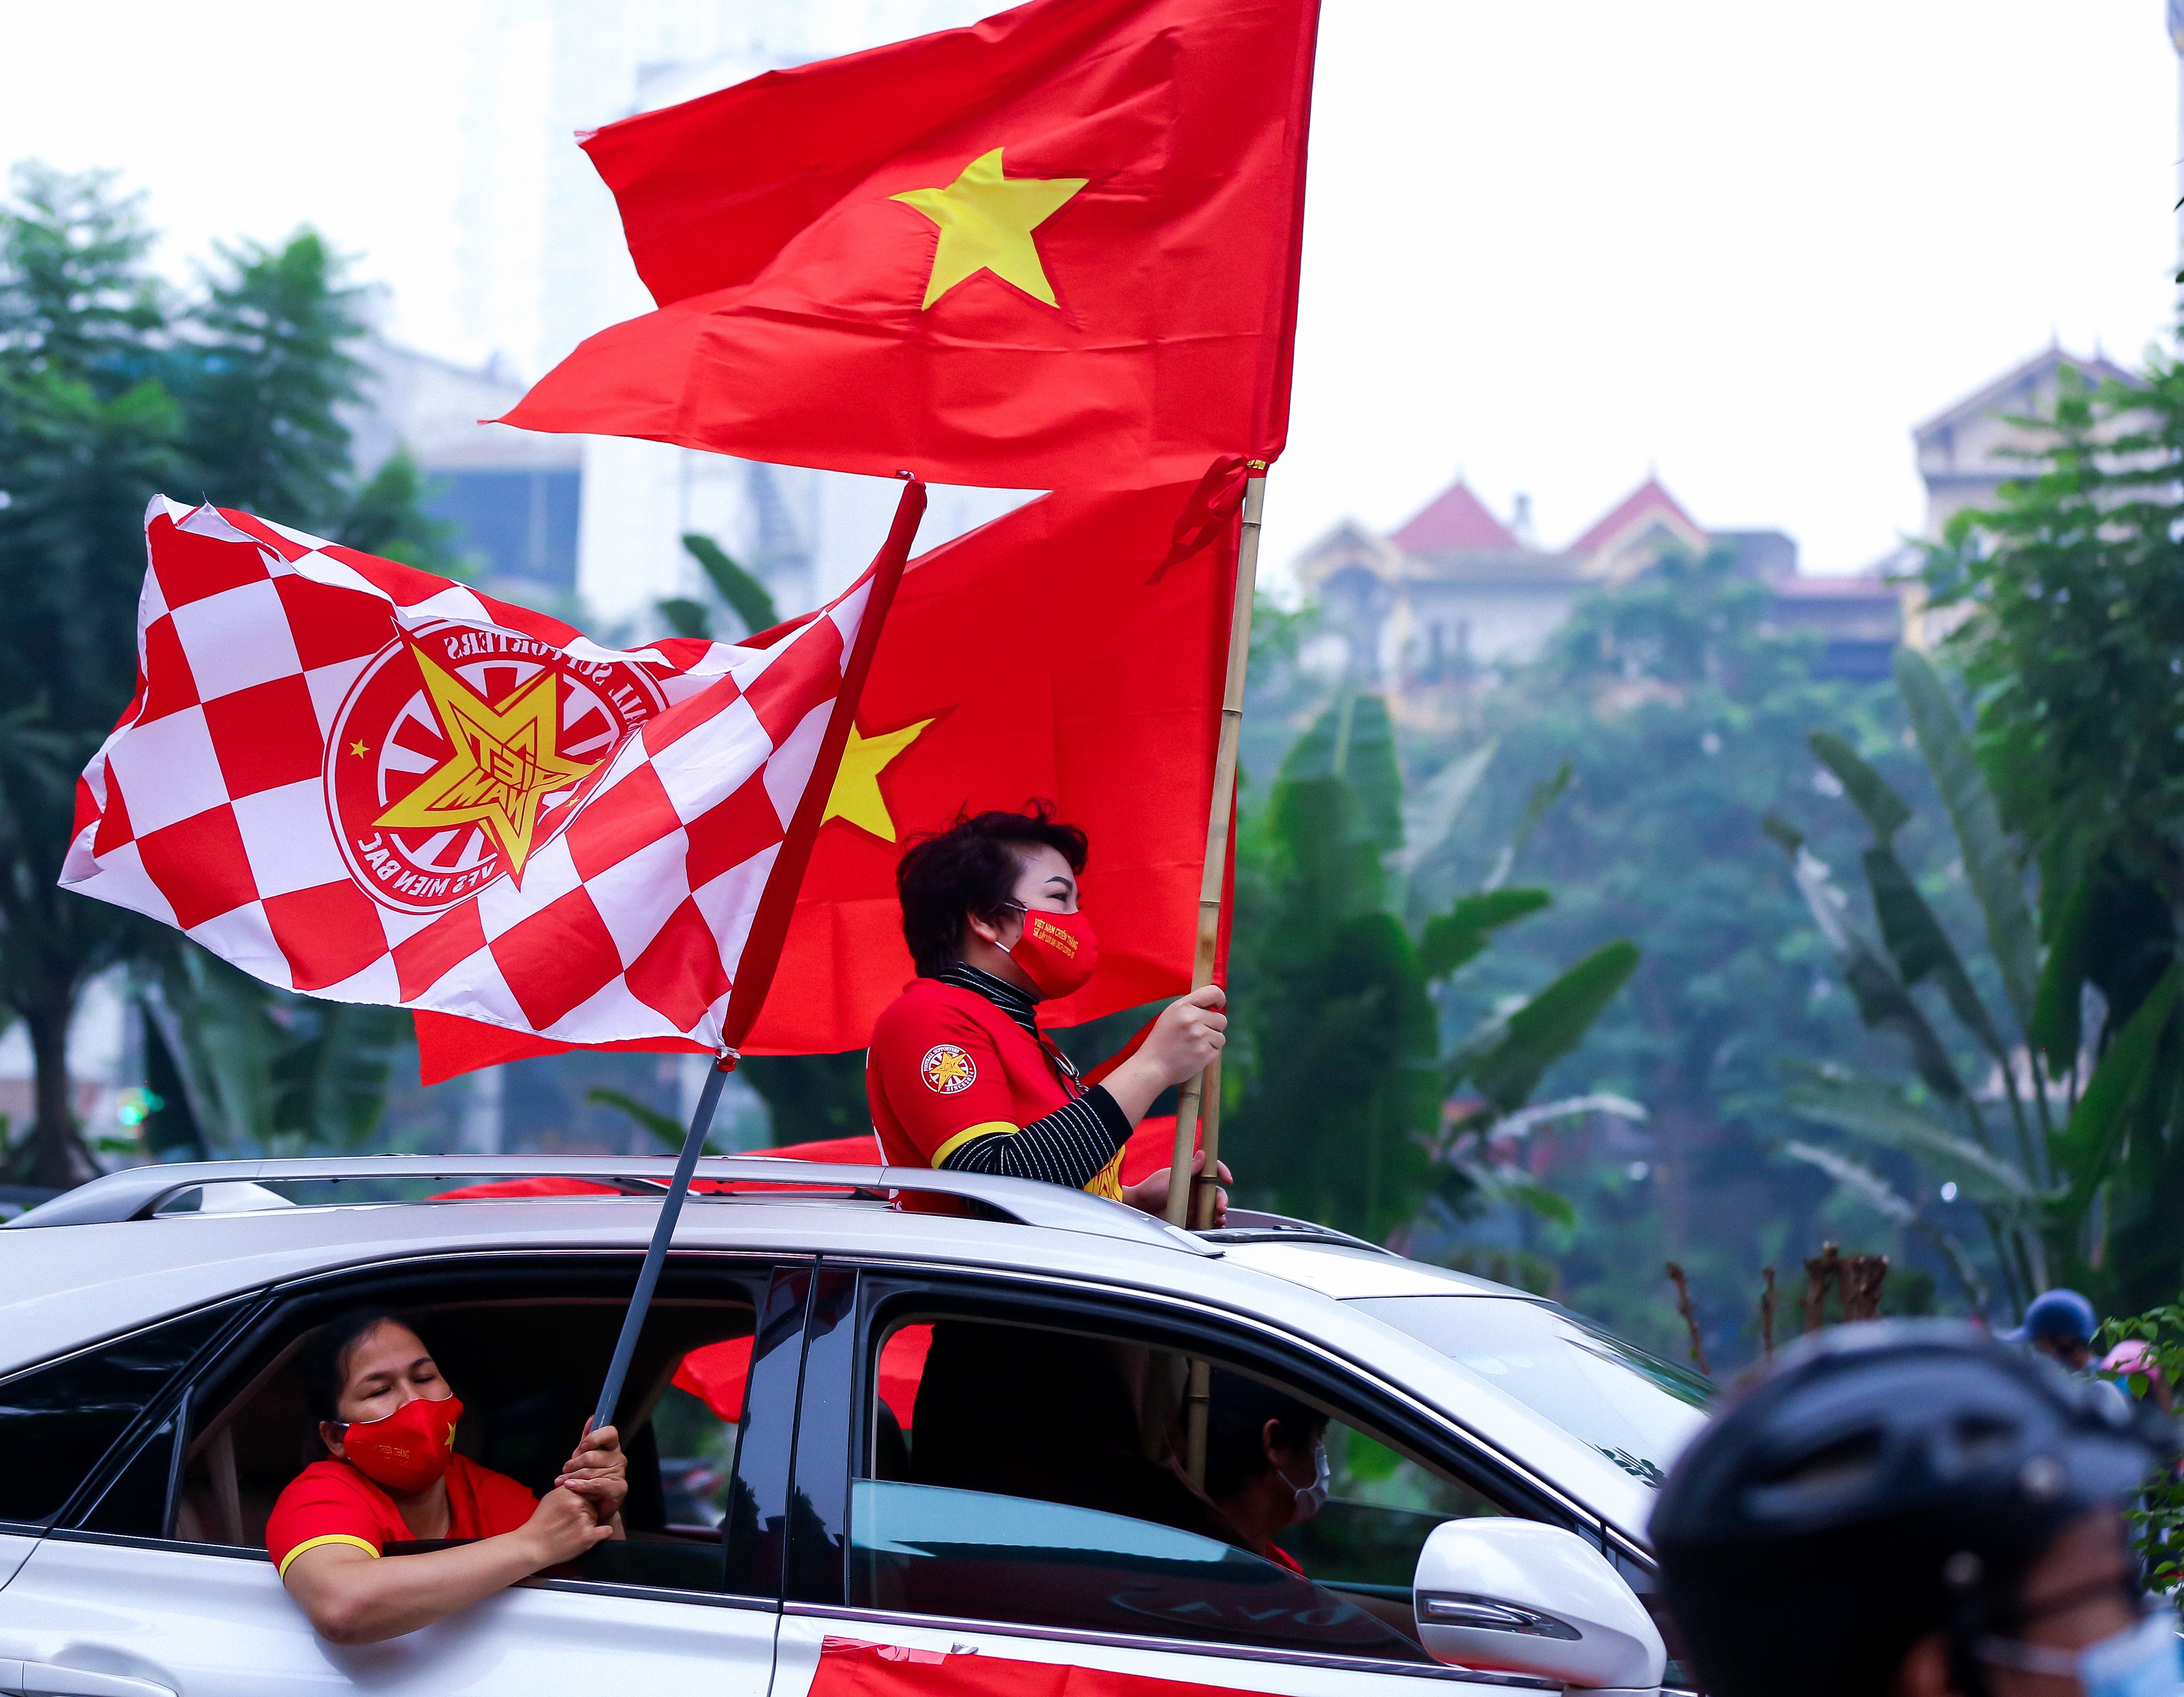  Đoàn diễu hành cùng với cờ đỏ sao vàng, khẩu hiệu cổ vũ tuyển Việt Nam diễu hành qua nhiều tuyến phố của thủ đô Hà Nội.